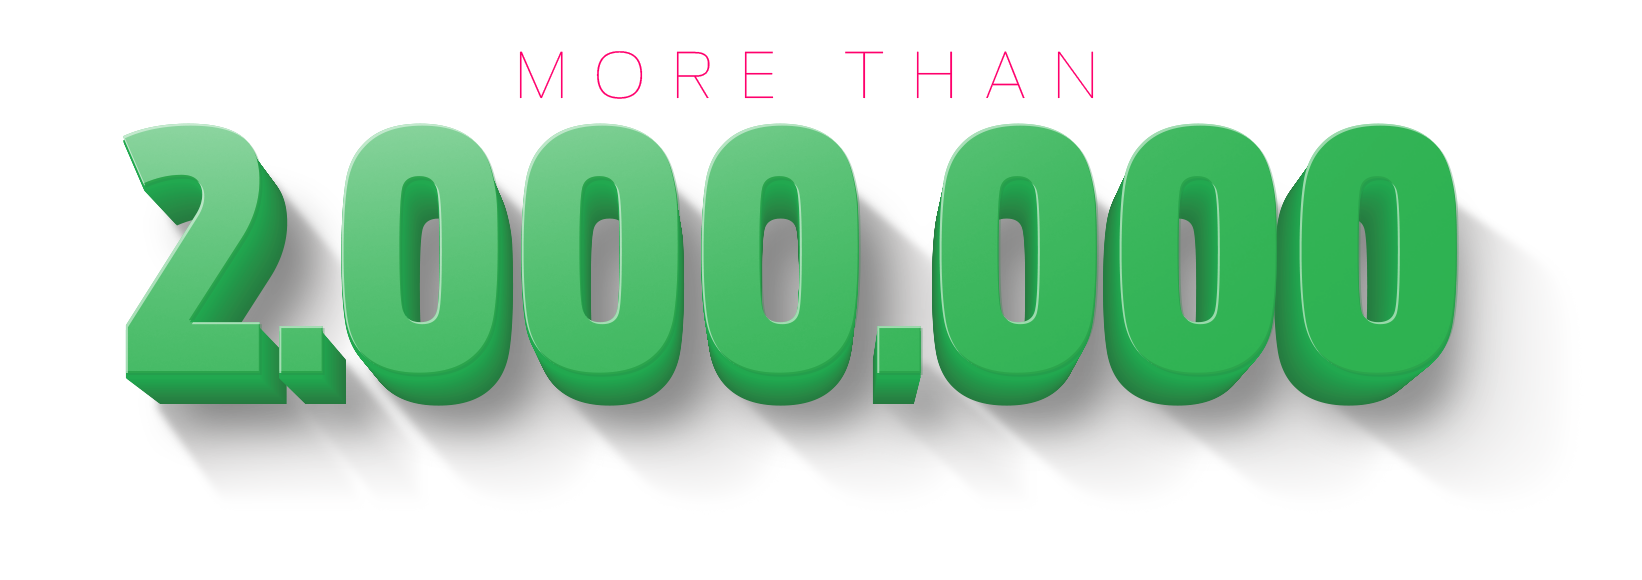 2000000